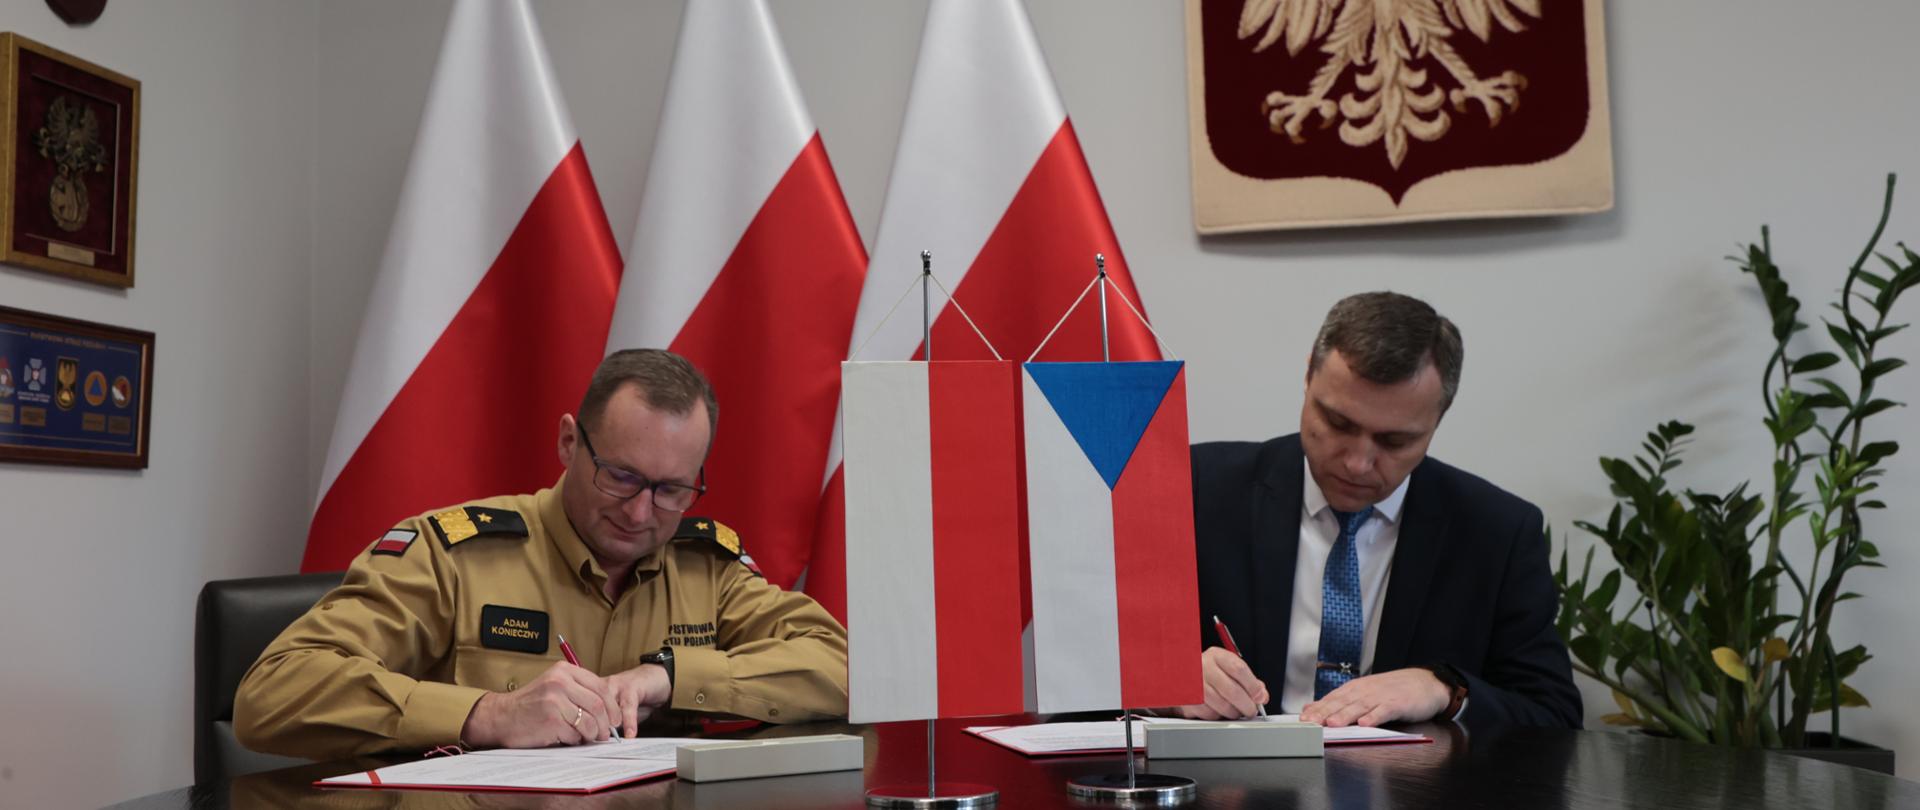 Zastępca komendanta głównego PSP oraz przewodniczący czeskiej części grupy roboczej podpisują dokumenty , na stole flagi Polski i Czech, w tle trzy flagi Polski